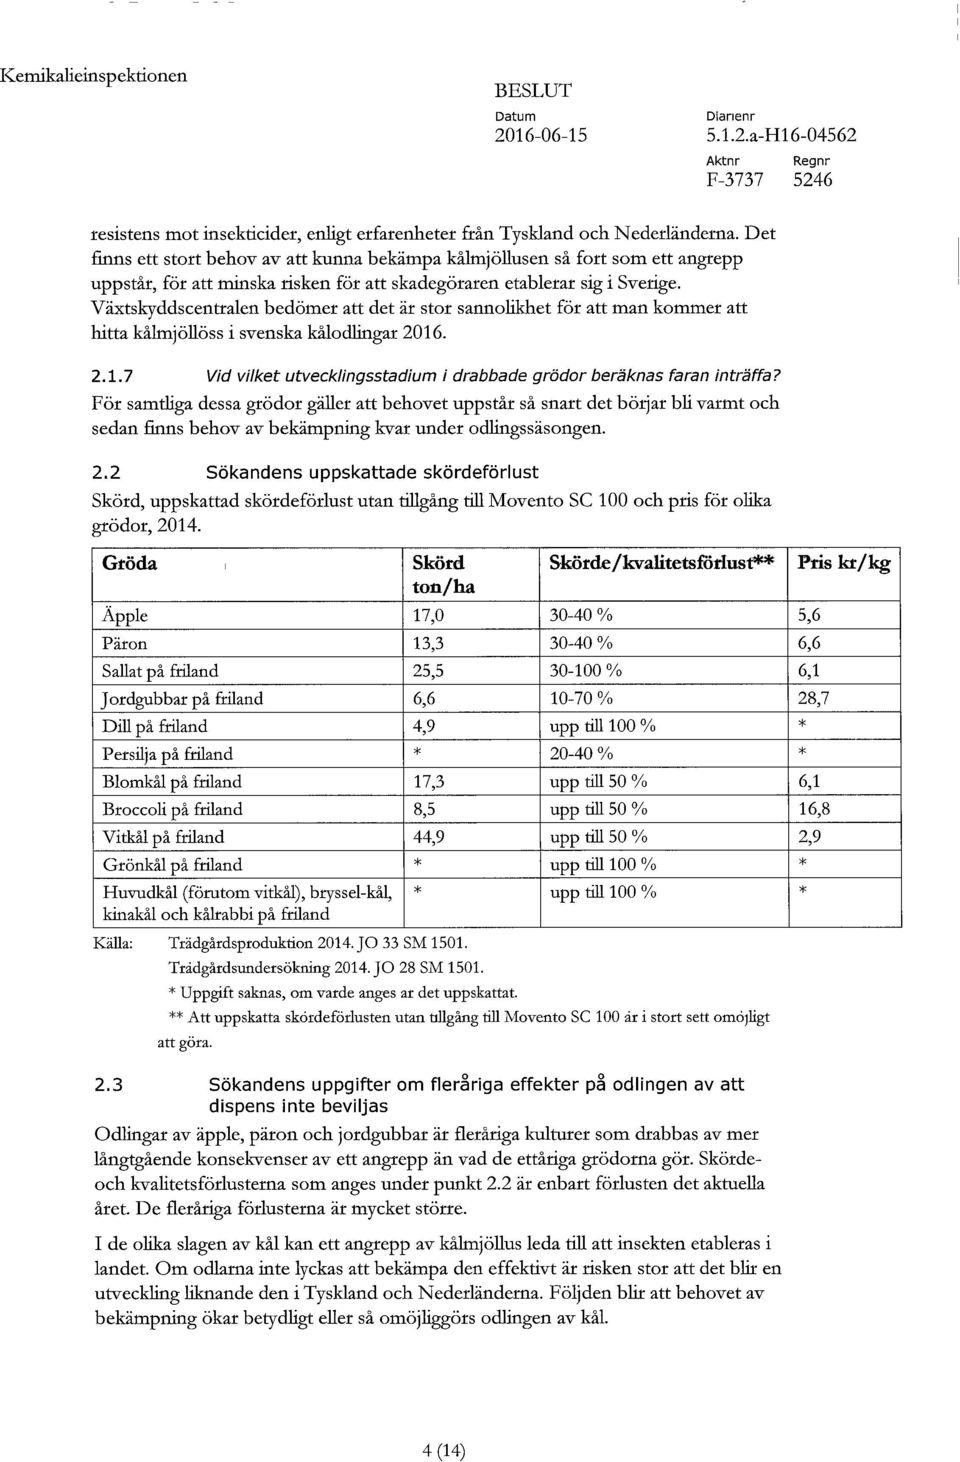 Växtskyddscentralen bedömer att det är stor sannolikhet för att man kommer att hitta kålmjöllöss i svenska kålodlingar 2016. 2.1.7 Vid vilket utvecklingsstadium i drabbade grödor beräknas faran inträffa?